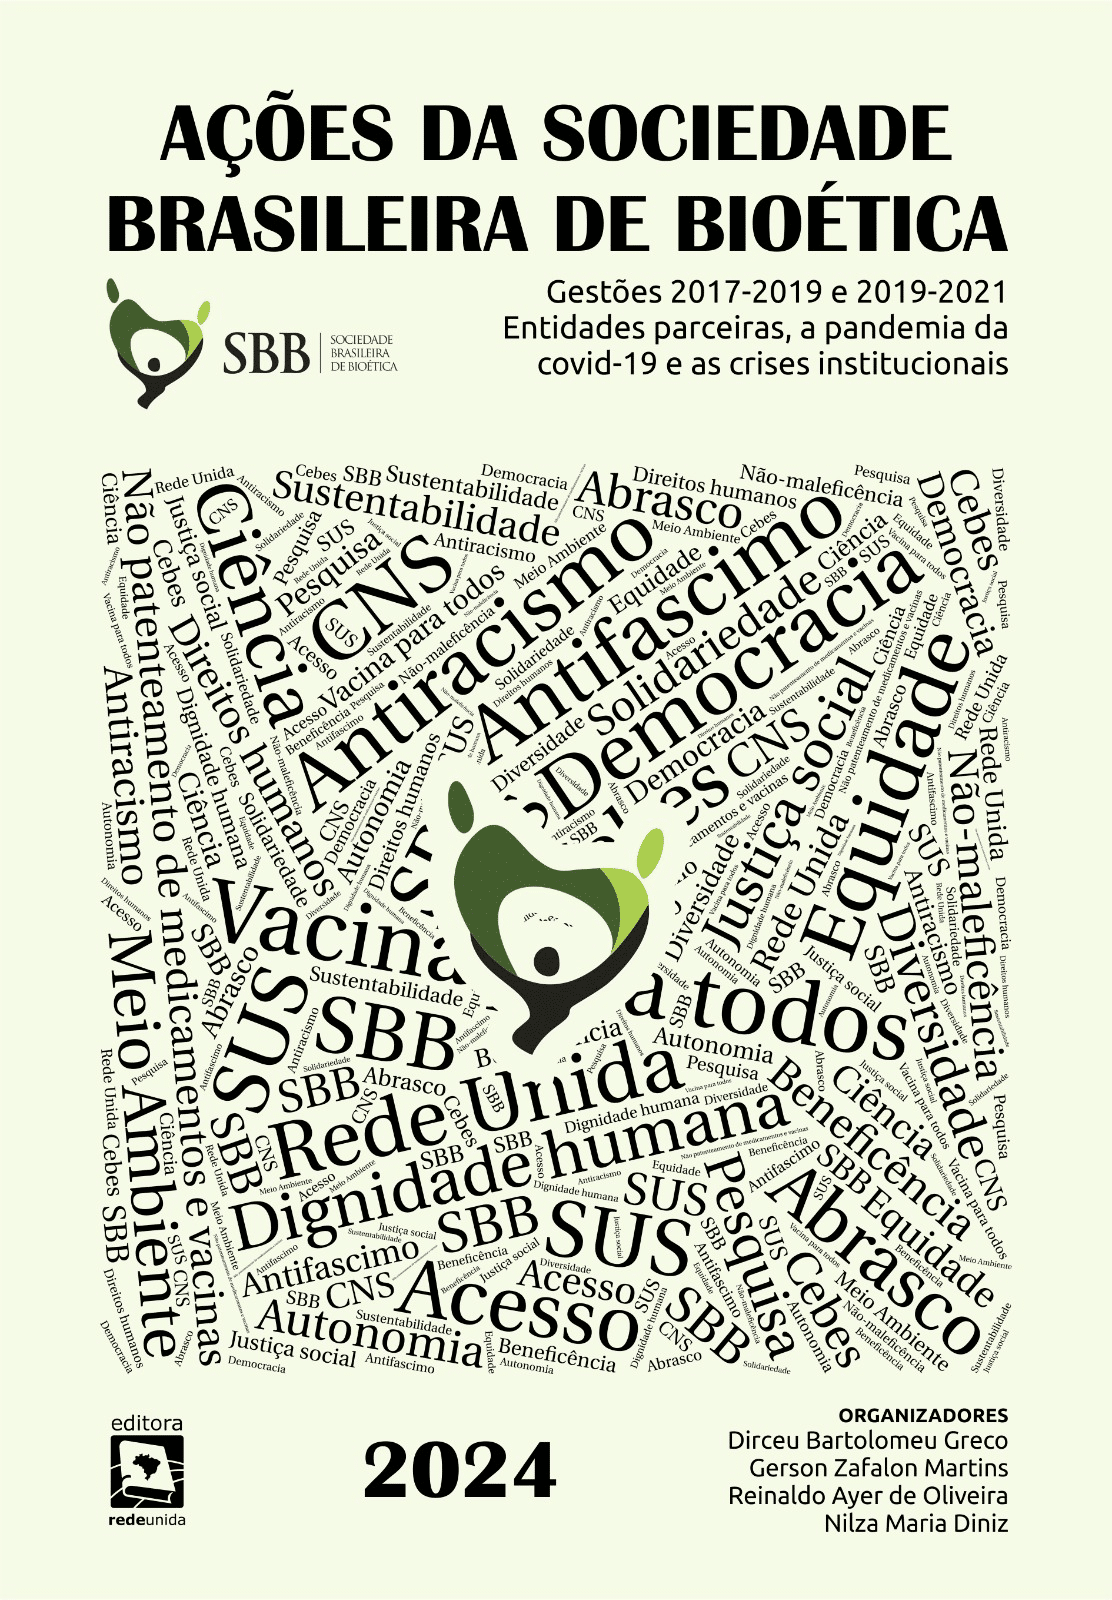 Ações da Sociedade Brasileira de Bioética (SBB): gestões 2017-2019 e 2019-2021- entidades parceiras, a pandemia da covid-19 e as crises institucionais